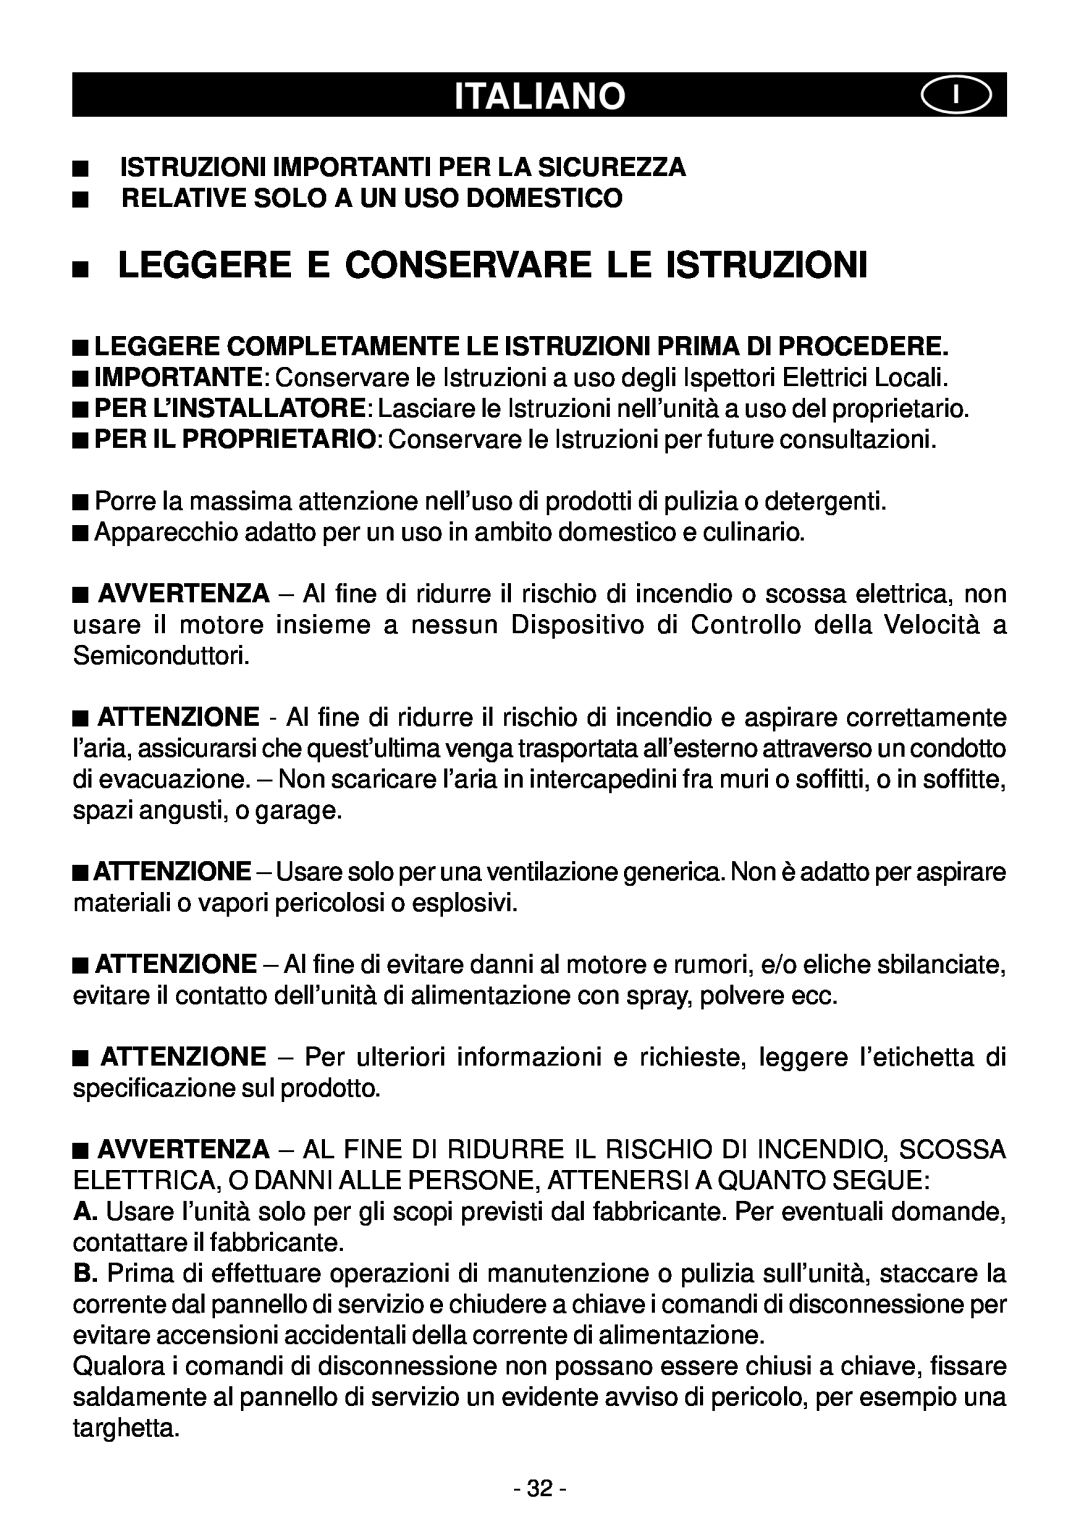 Elitair PN-I manual Italianoi, Leggere E Conservare Le Istruzioni, Istruzioni Importanti Per La Sicurezza 